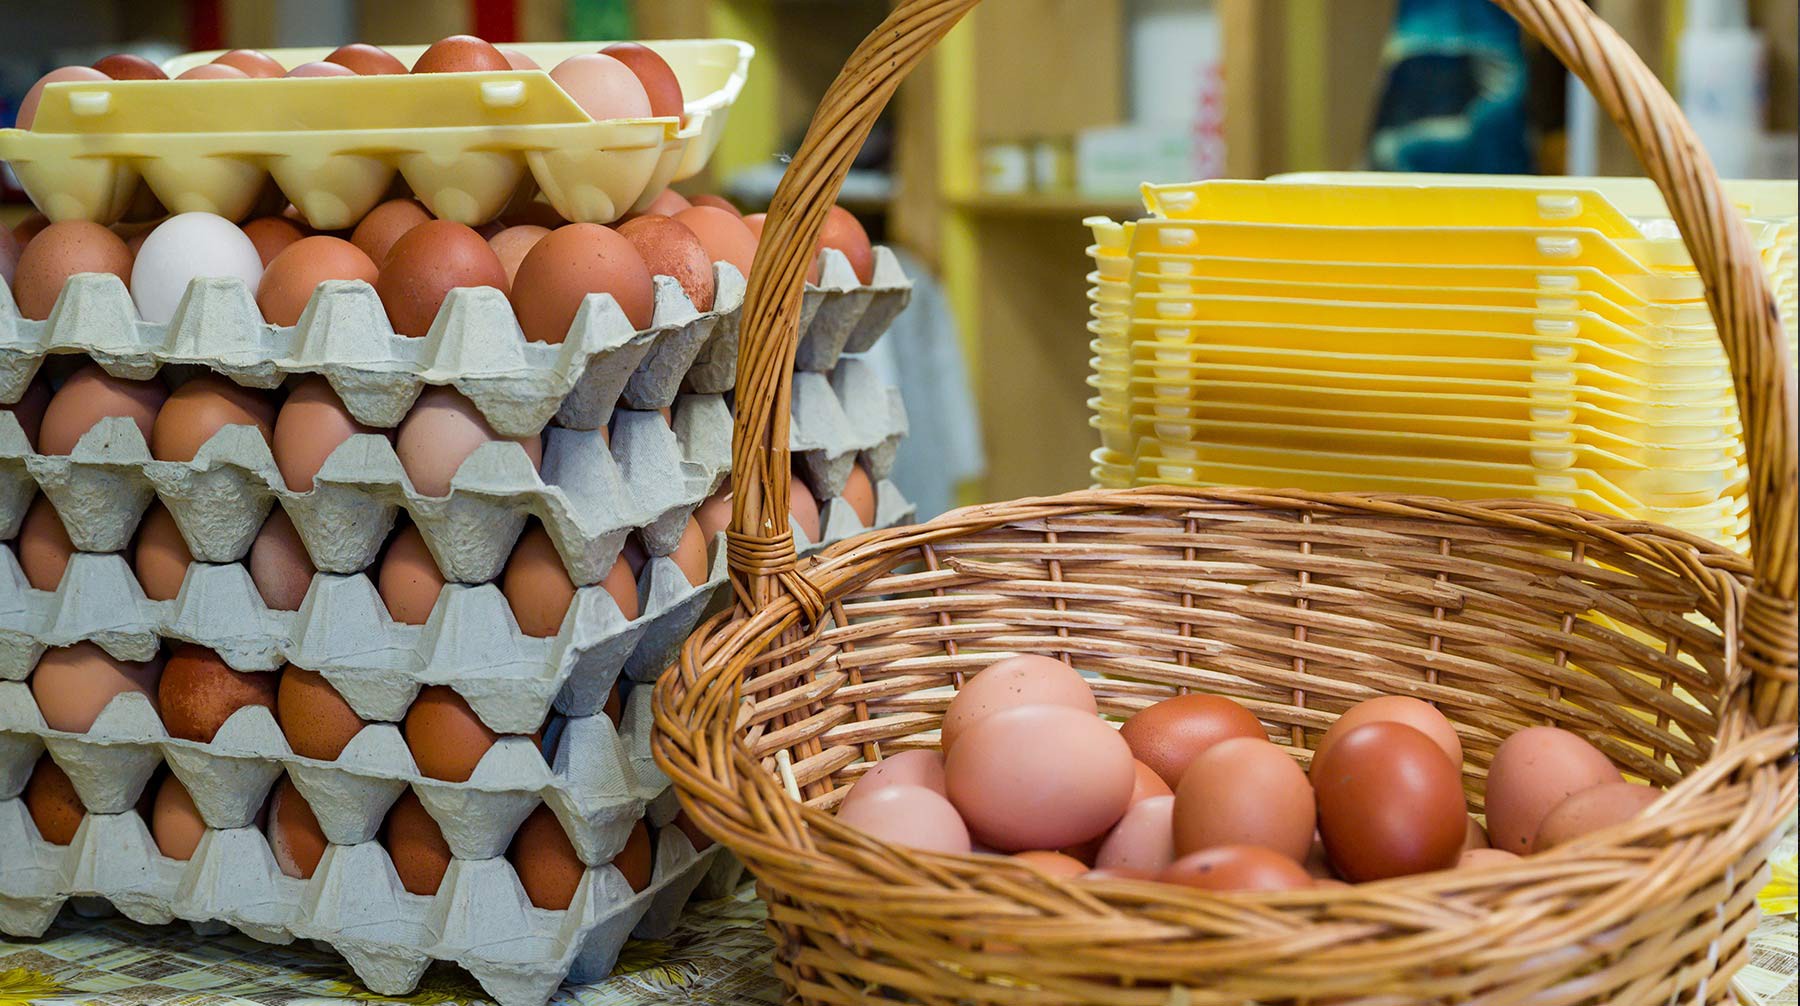 Dailystorm - Больше — не значит лучше: советы от фермеров по выбору яиц